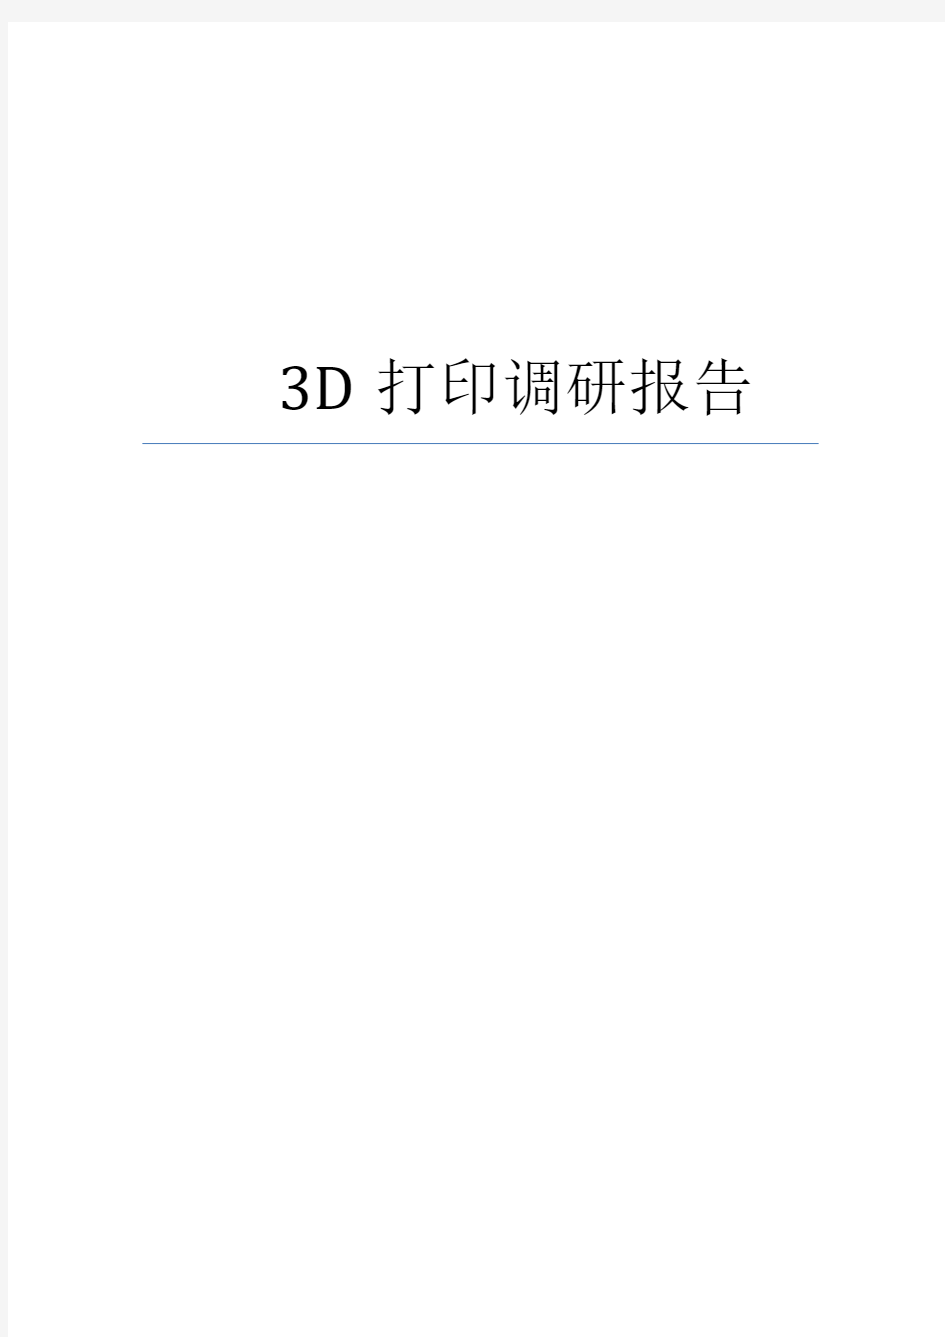 3D打印调研报告